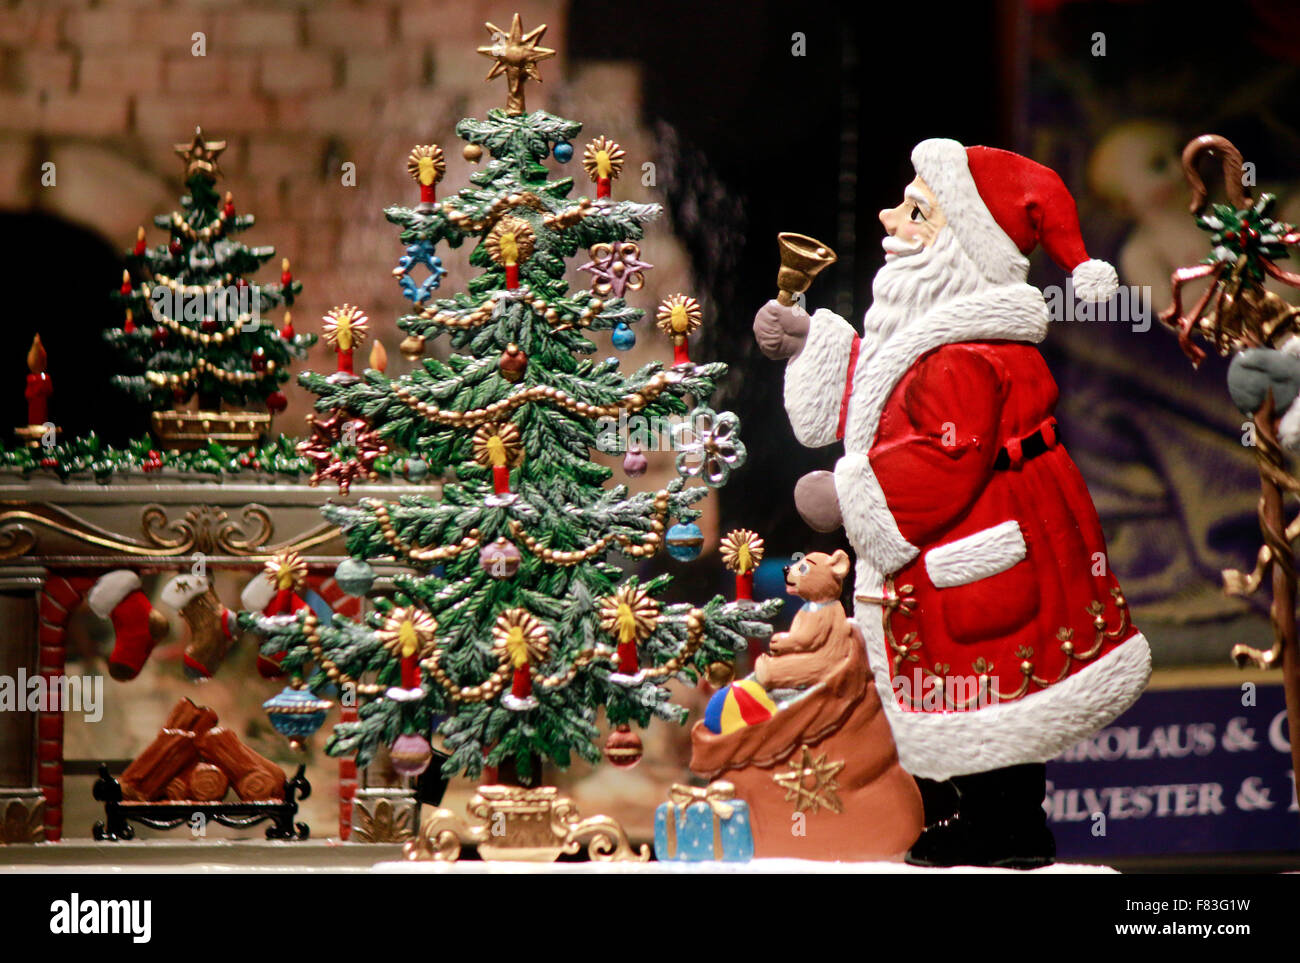 Weihnachtsmann, Kind, Schneemann, Weihnachtsbaum - Schaufensterdekoration zu Weihnachten, Berlin. Stock Photo